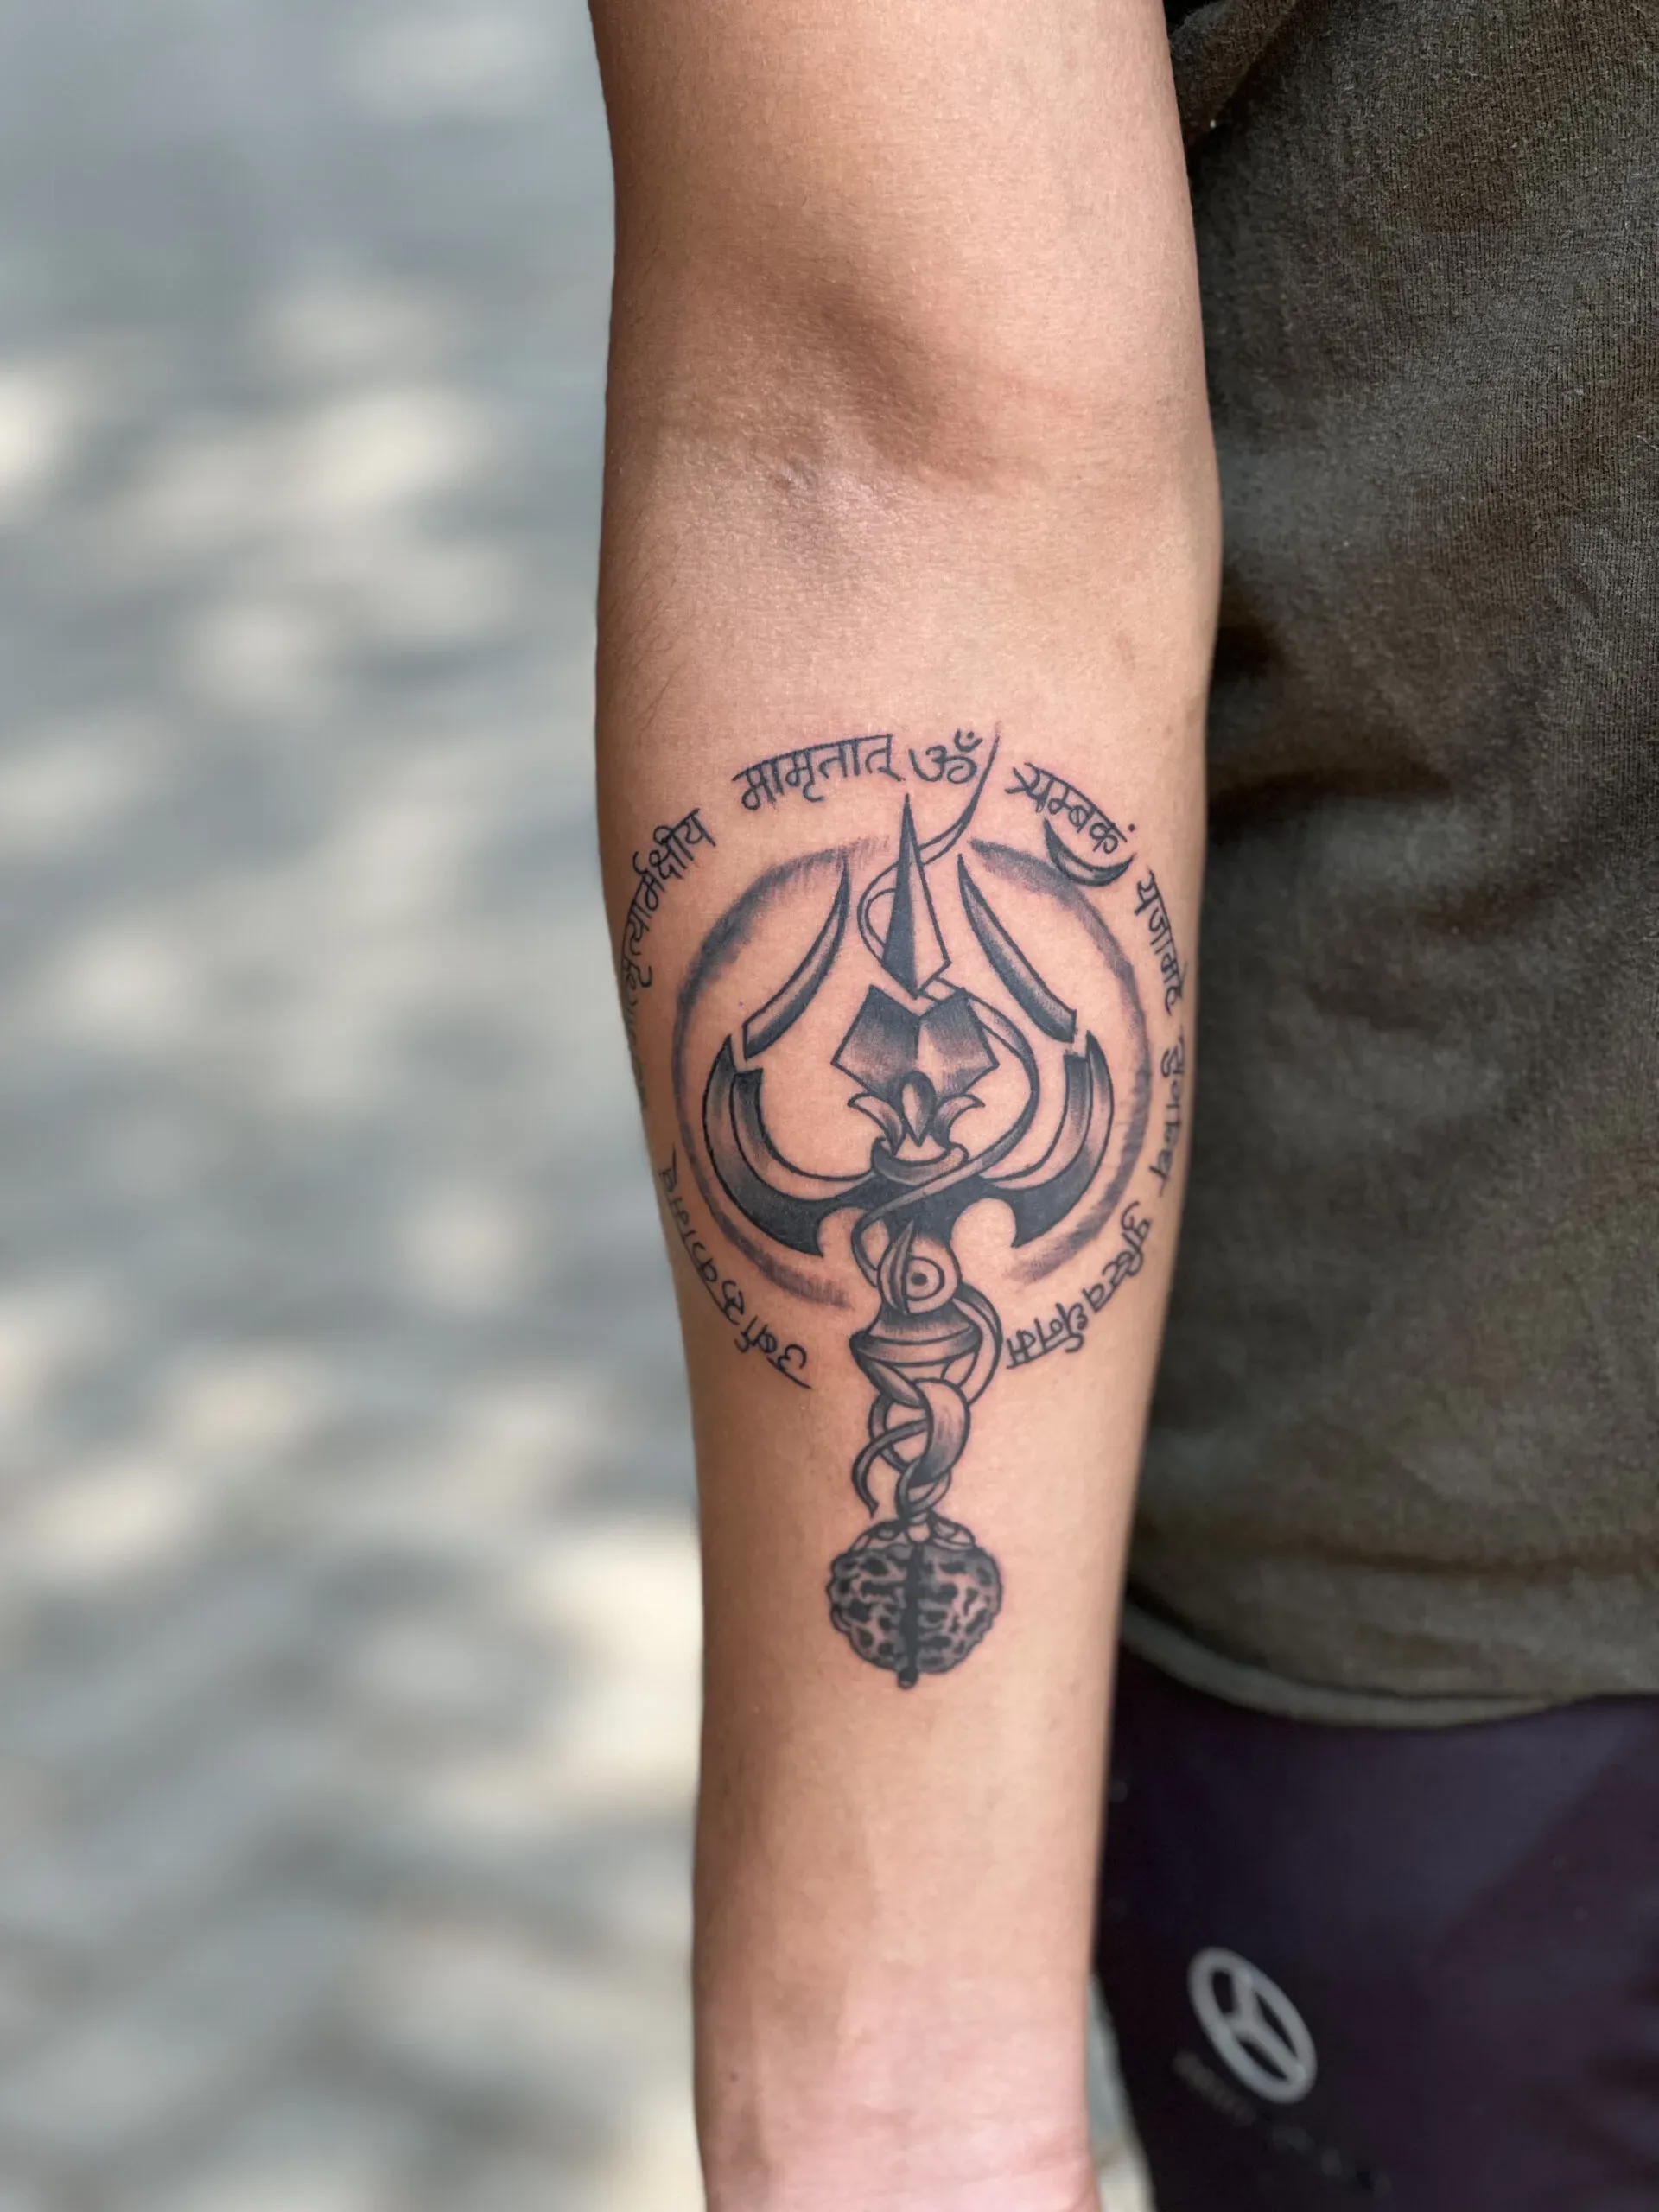 Karma Tattoo | Karma tattoo, Hand tattoos for guys, Wrist tattoos for guys